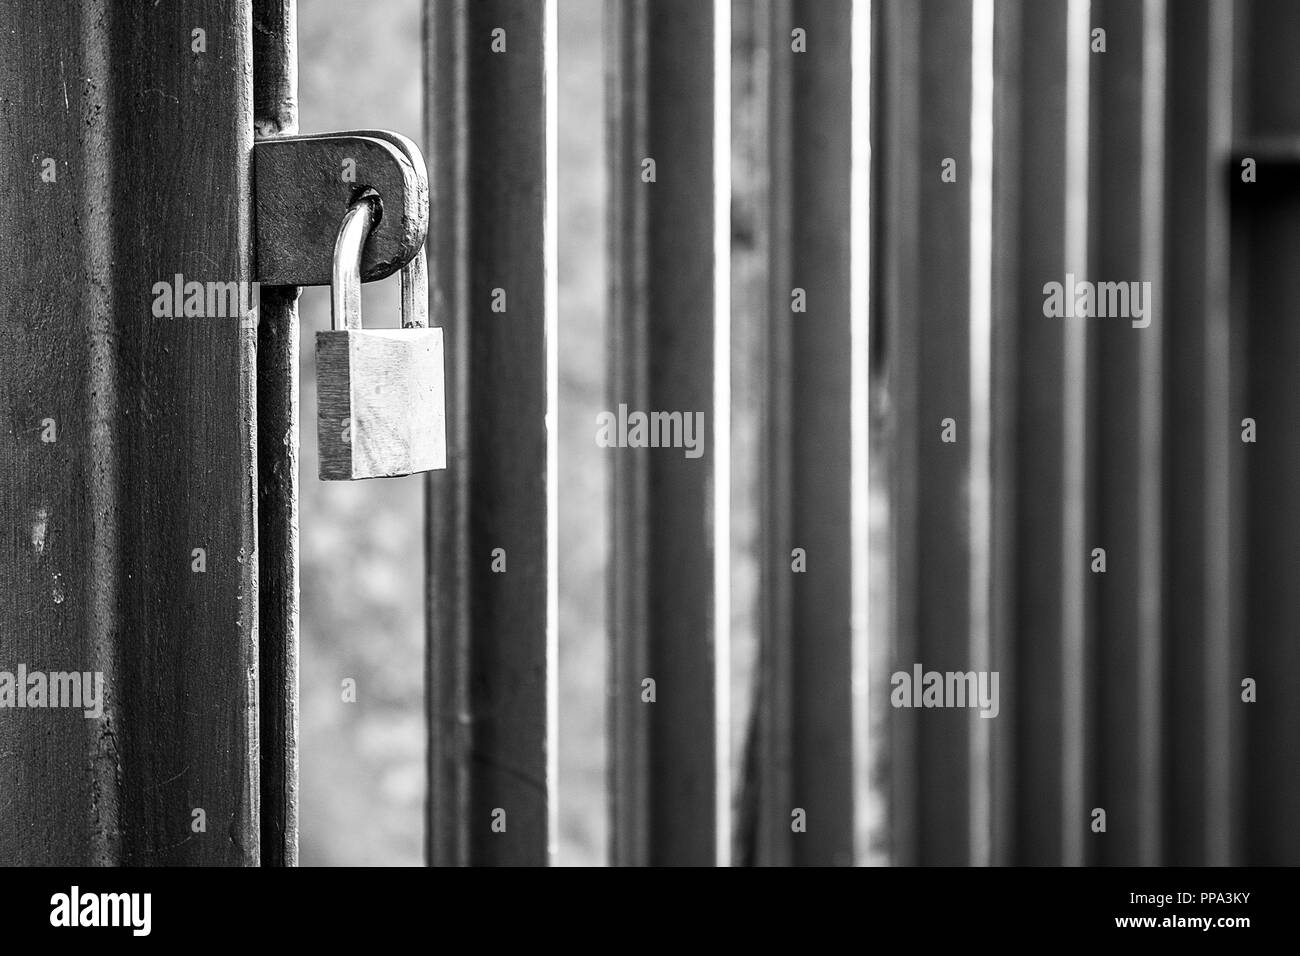 La porte fermée avec barres verticales avec cadenas fermé en noir et blanc Banque D'Images